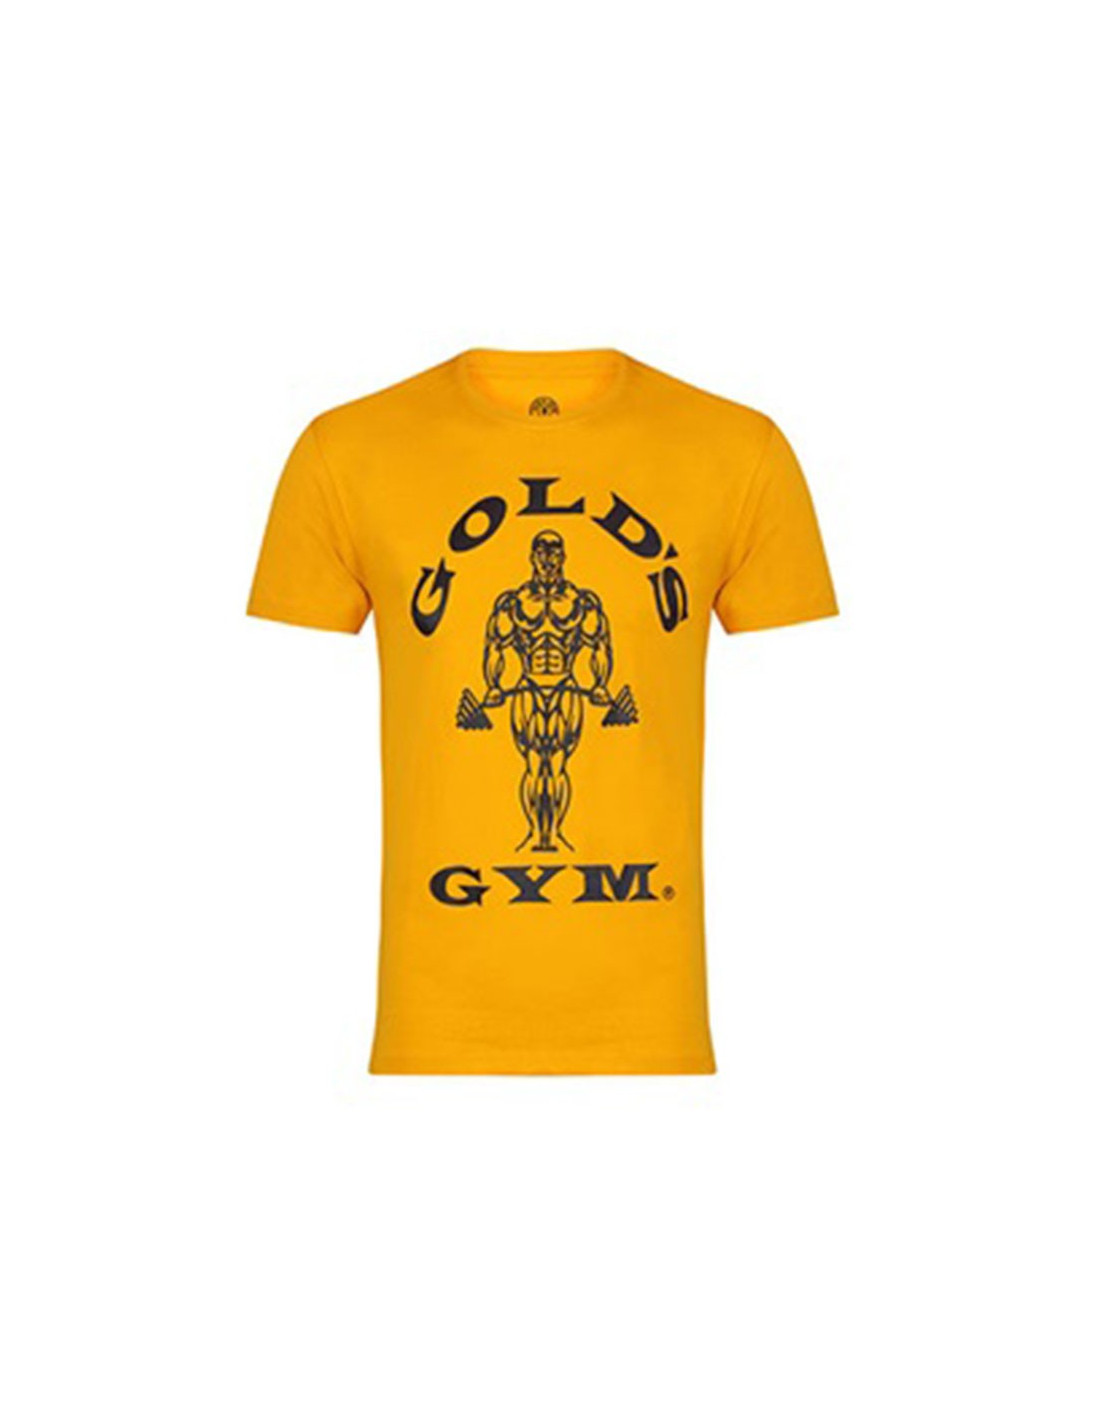 T-shirt Gold's Gym - Vêtement musculation